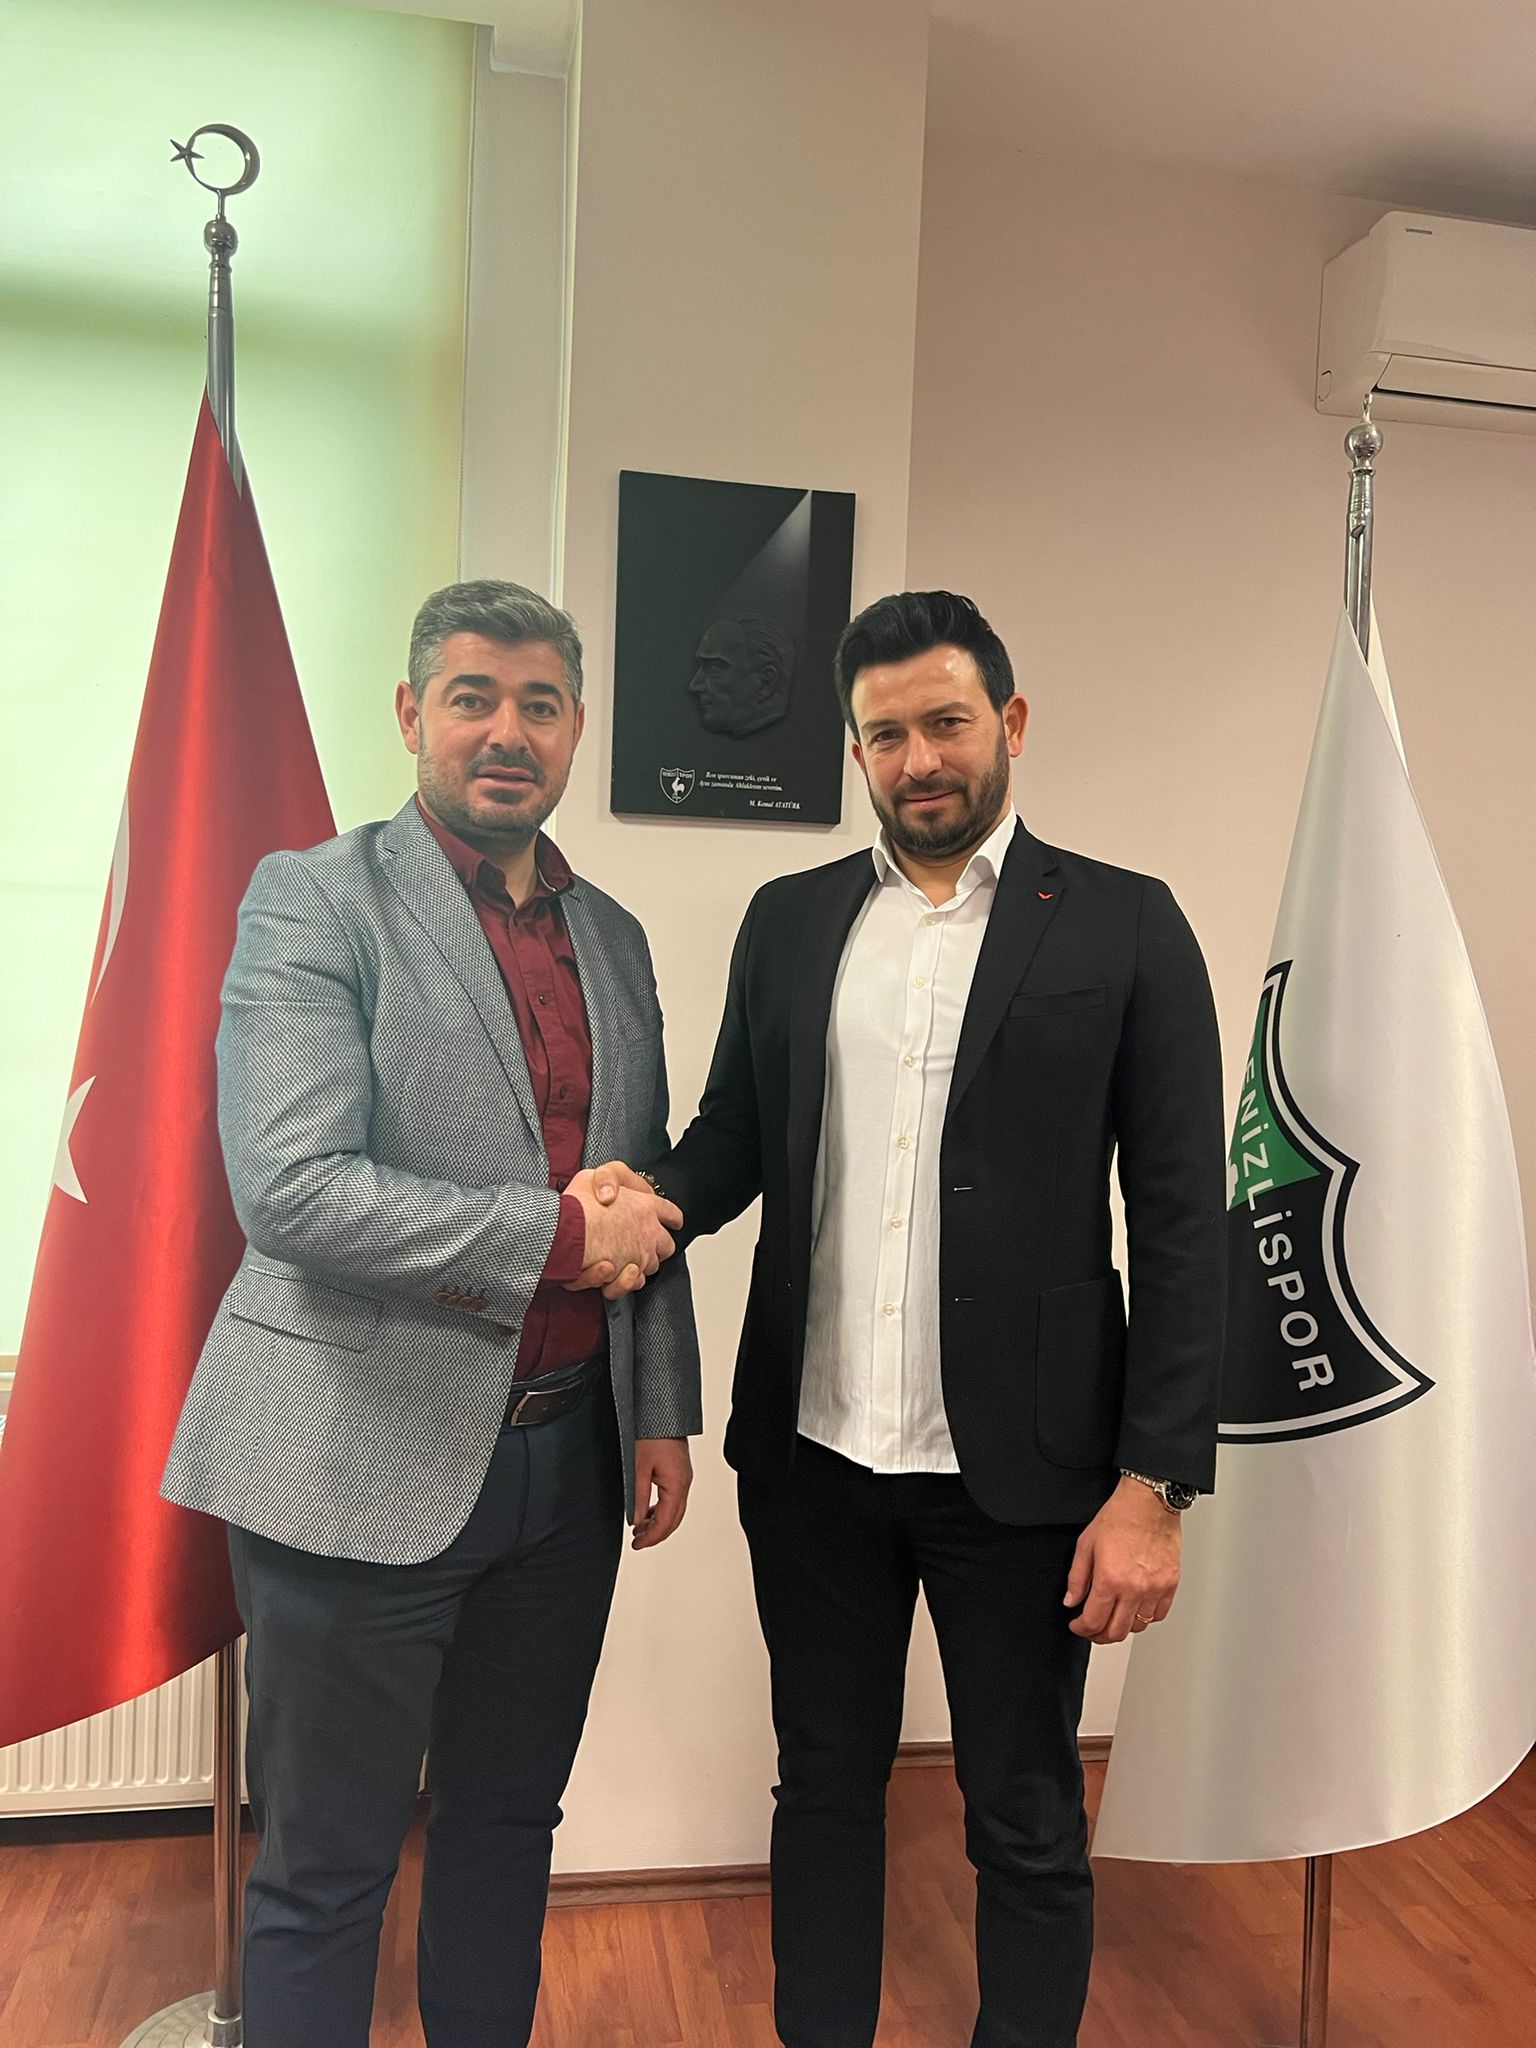 Denizlispor’da Kemal Kılıç’tan boşalan teknik direktörlük koltuğuna kulübün efsane isimlerinden Bülent Ertuğrul getirildi.